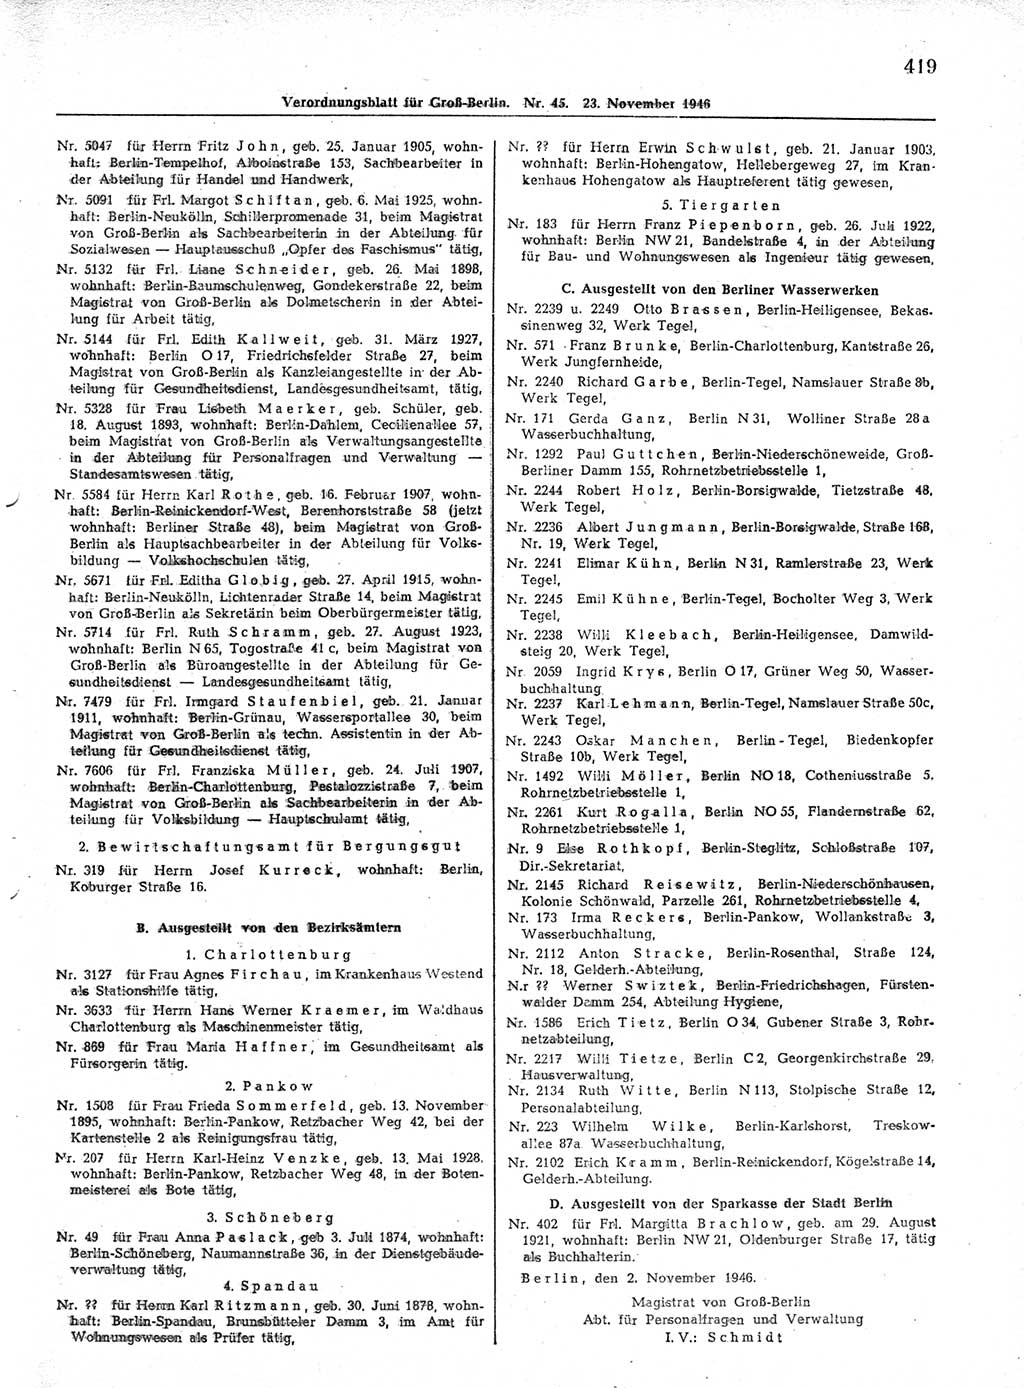 Verordnungsblatt (VOBl.) der Stadt Berlin, für Groß-Berlin 1946, Seite 419 (VOBl. Bln. 1946, S. 419)